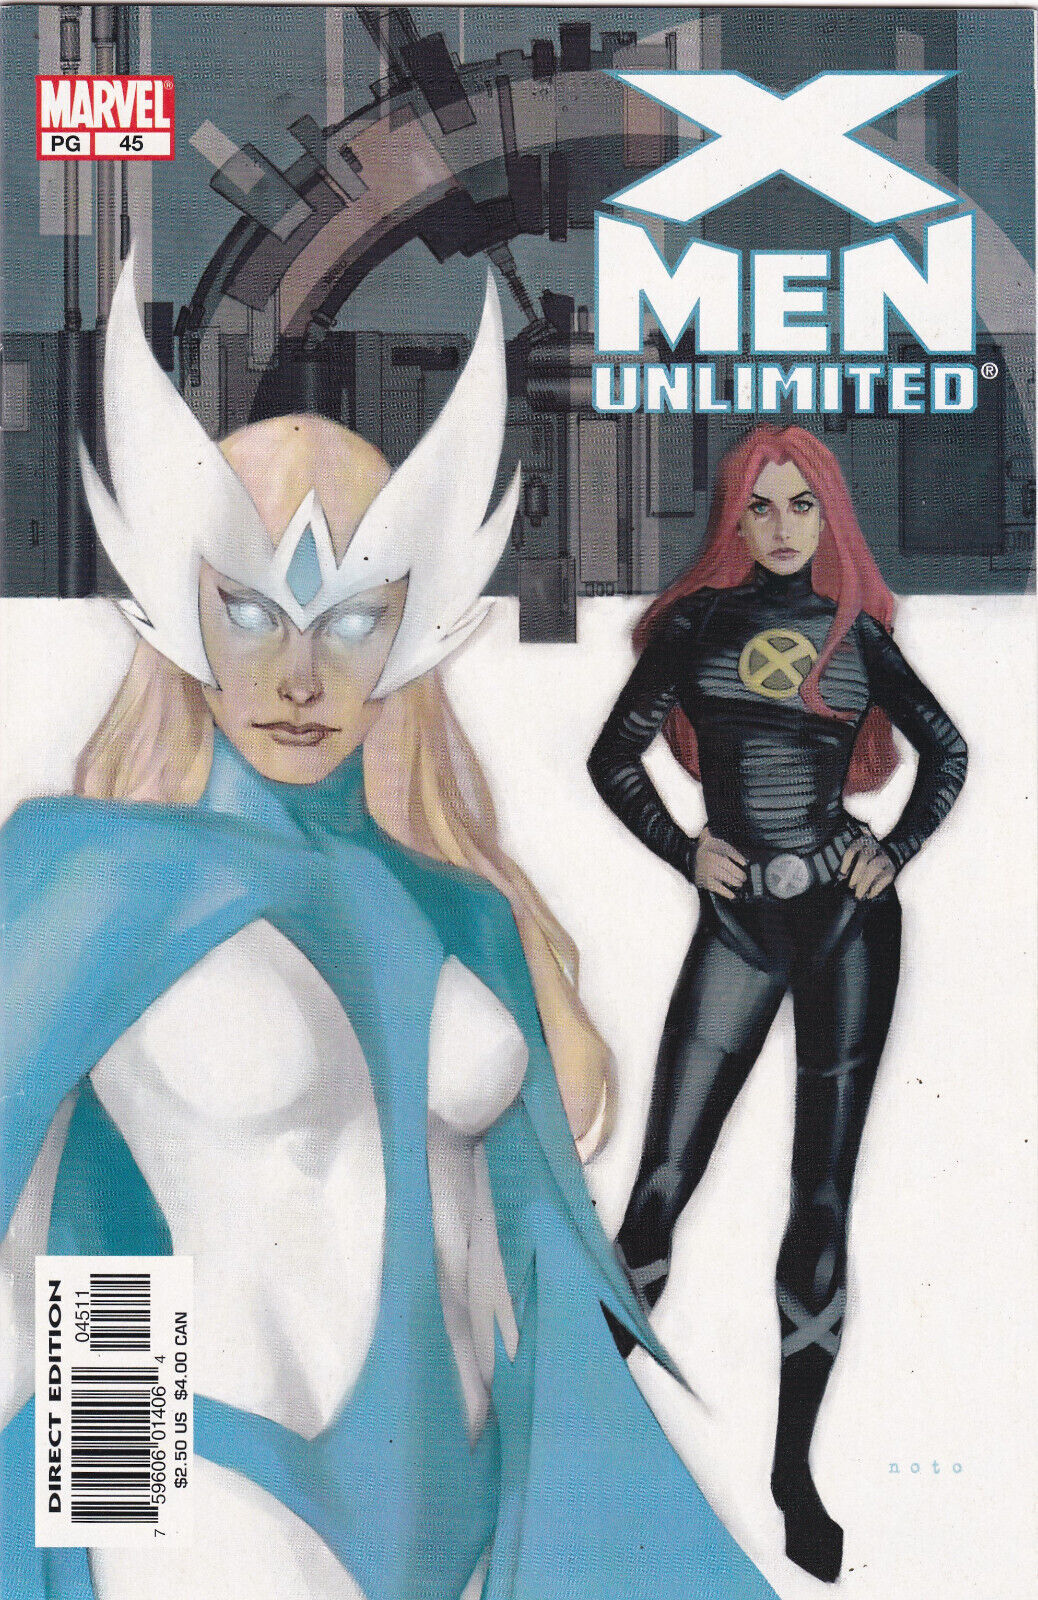 X-Men Unlimited #45 Vol. 1 (1993-2003) Marvel Comics, High Grade